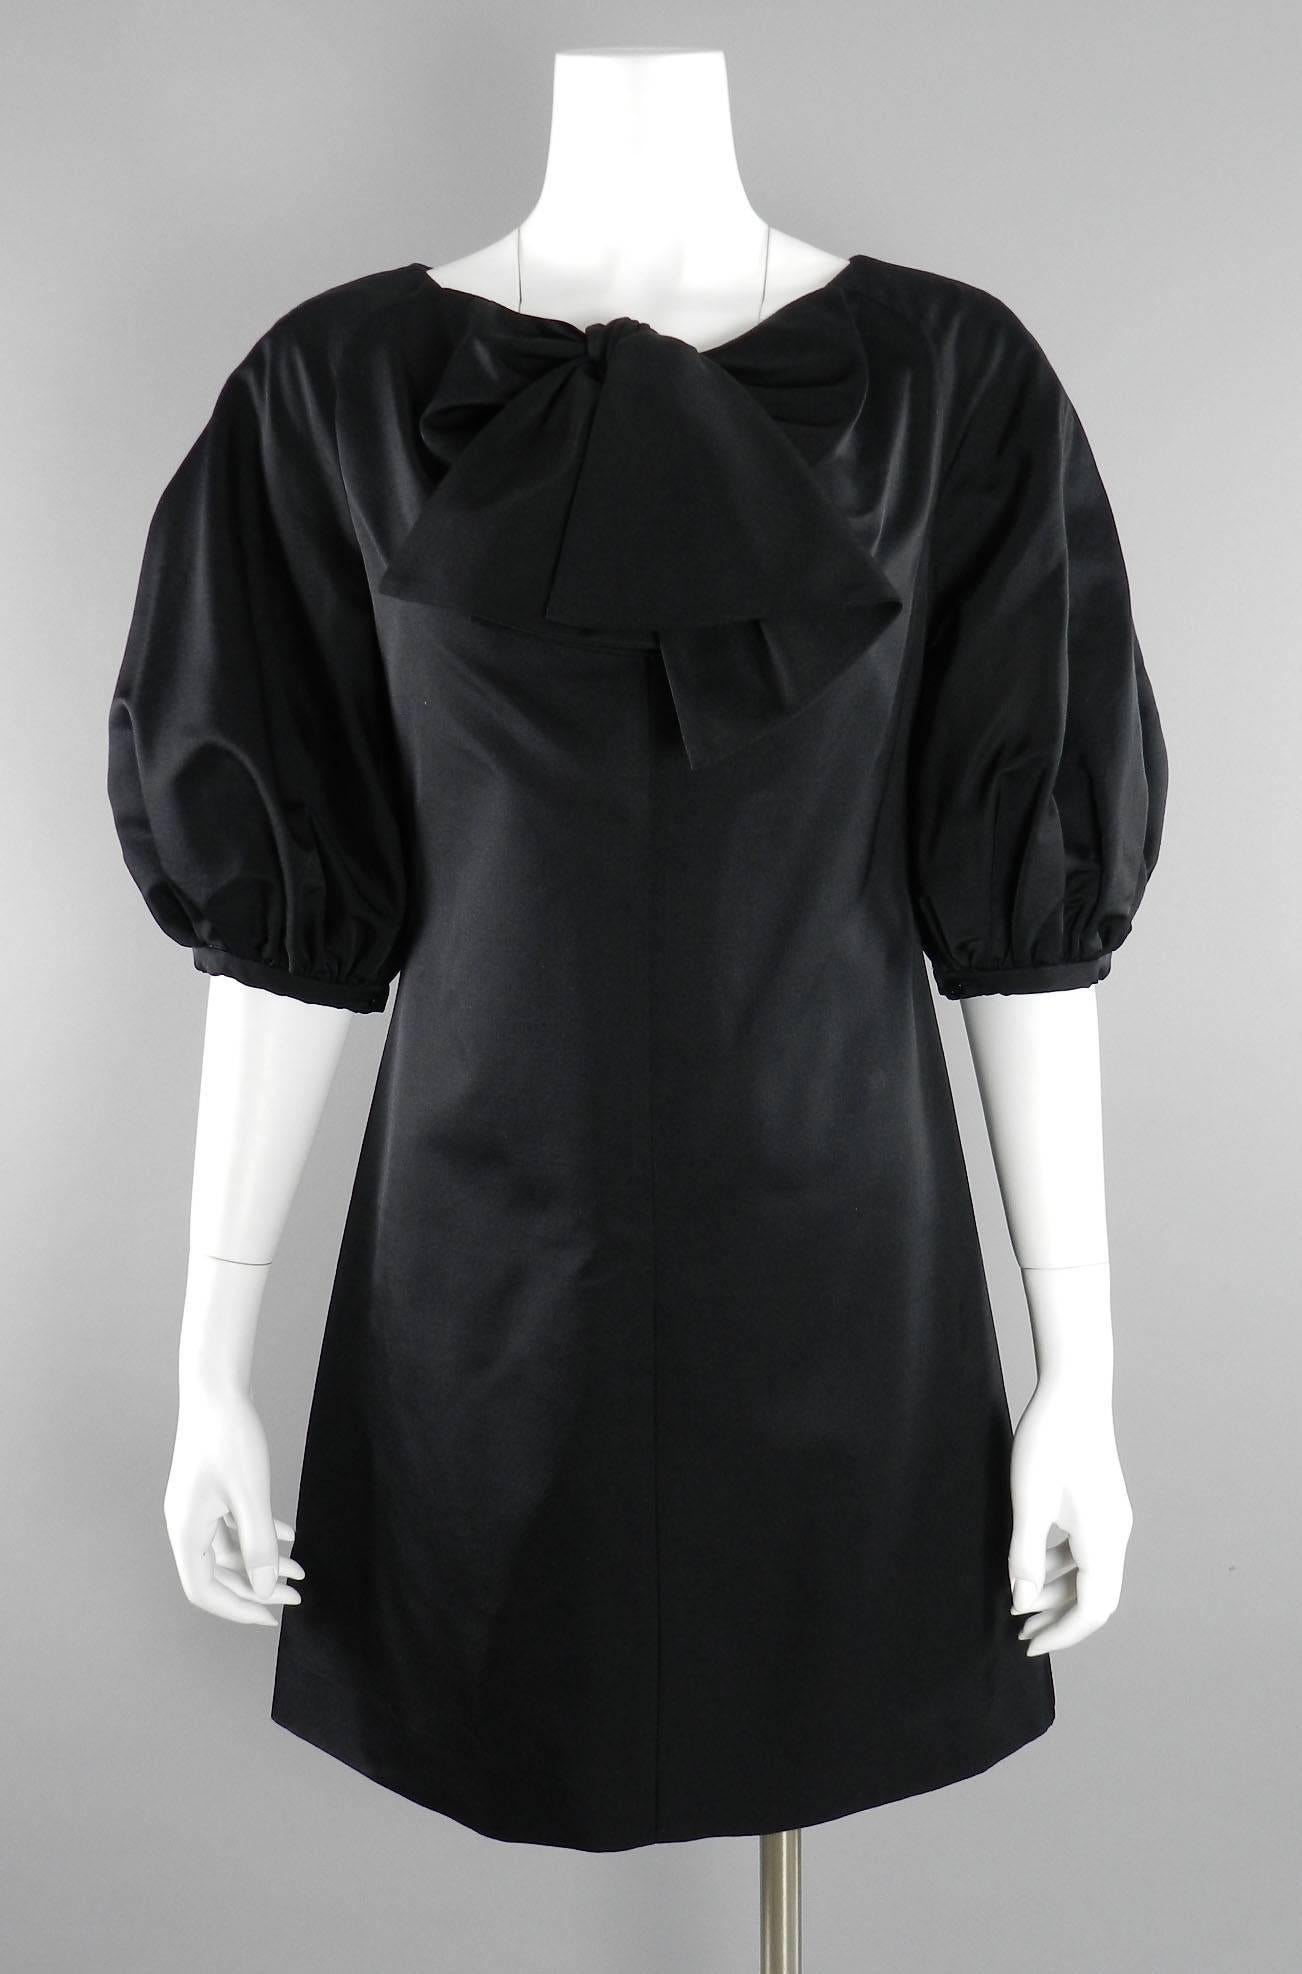 Giambattista Valli Black Satin Cocktail Dress with Bow 3